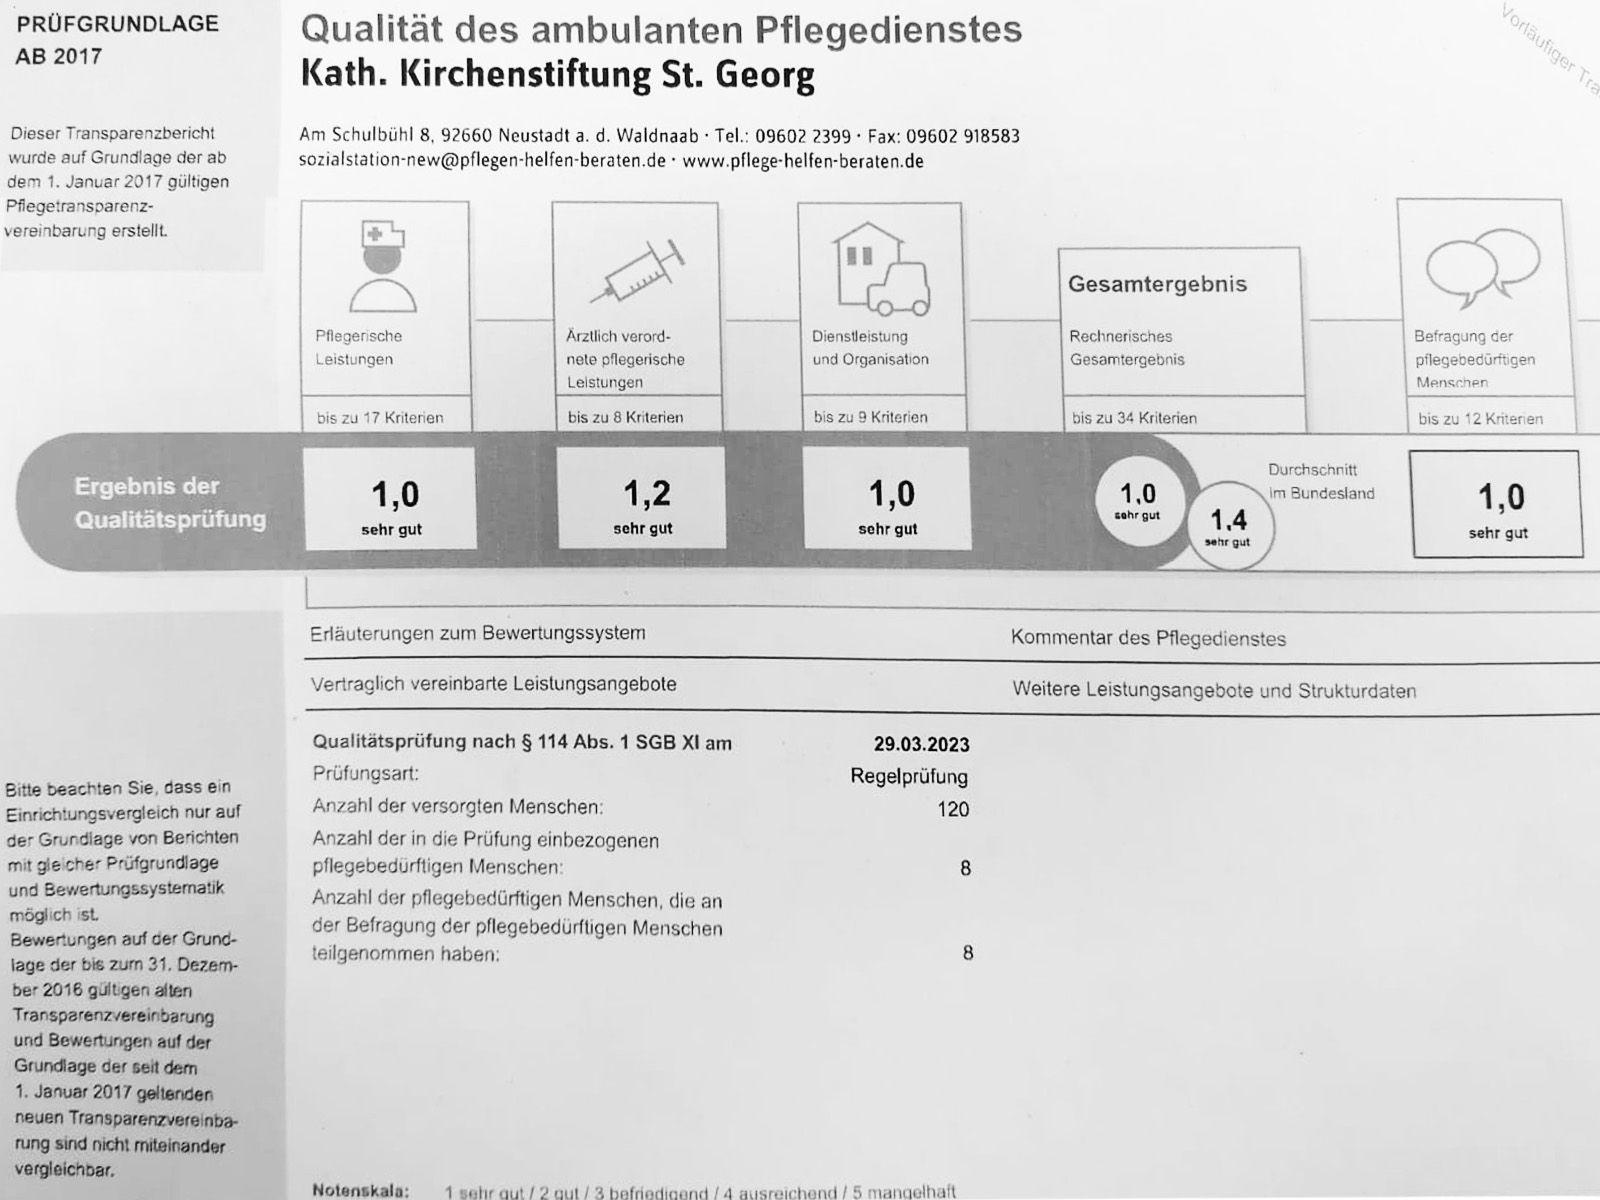 Ausgezeichnete Qualität: Ambulante Krankenpflege in Neustadt erhält Bestnote in Qualitätsprüfung durch den Medizinischen Dienst Bayern